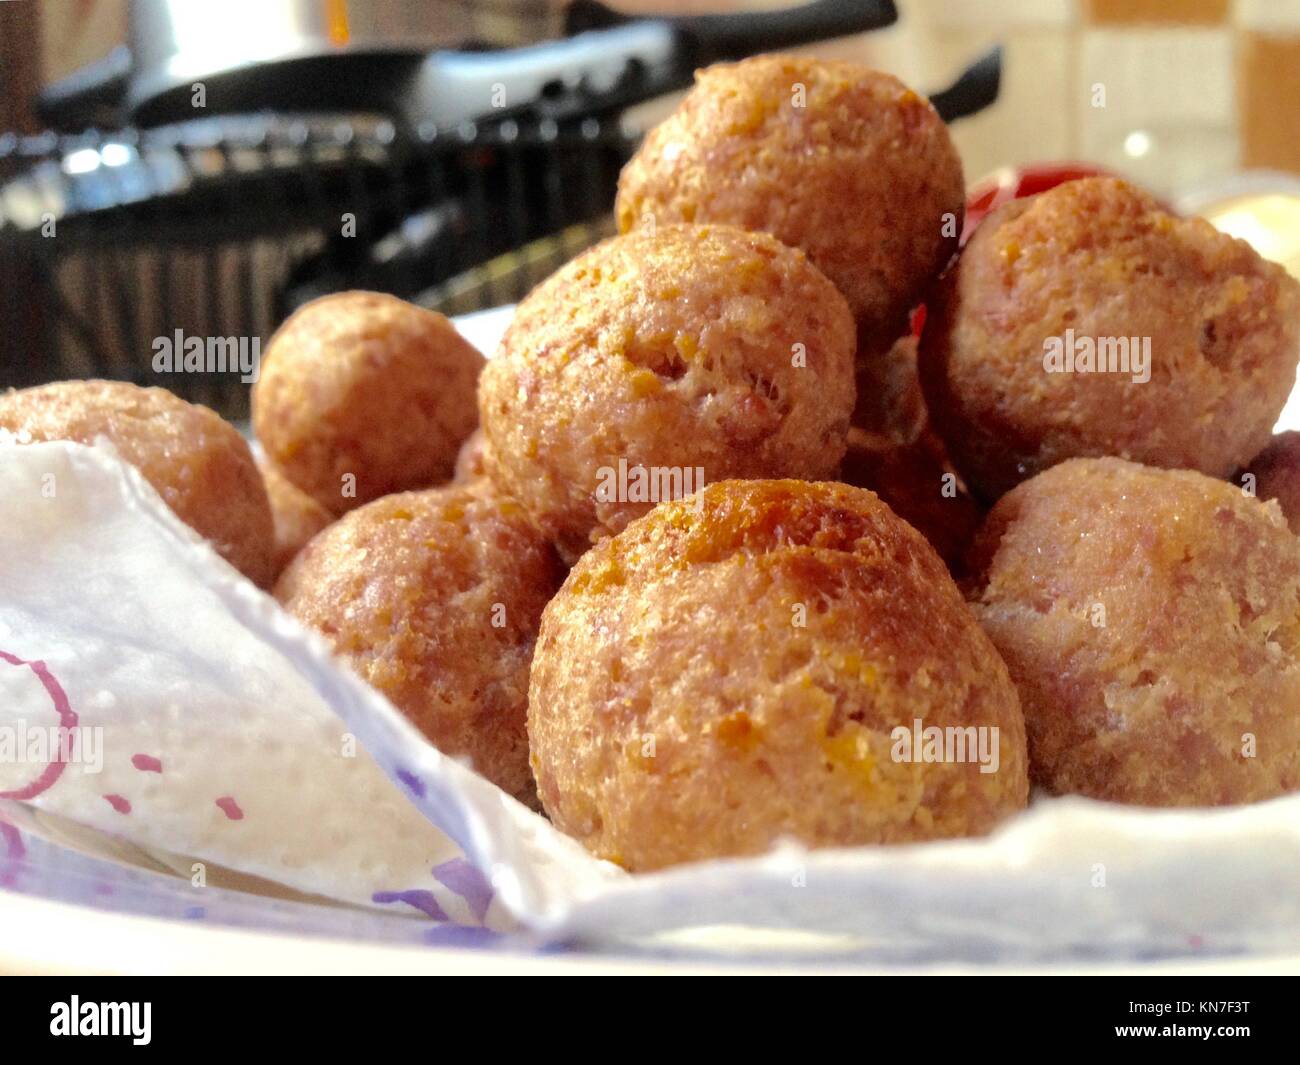 Fried large homemade meatballs for dinner. Stock Photo